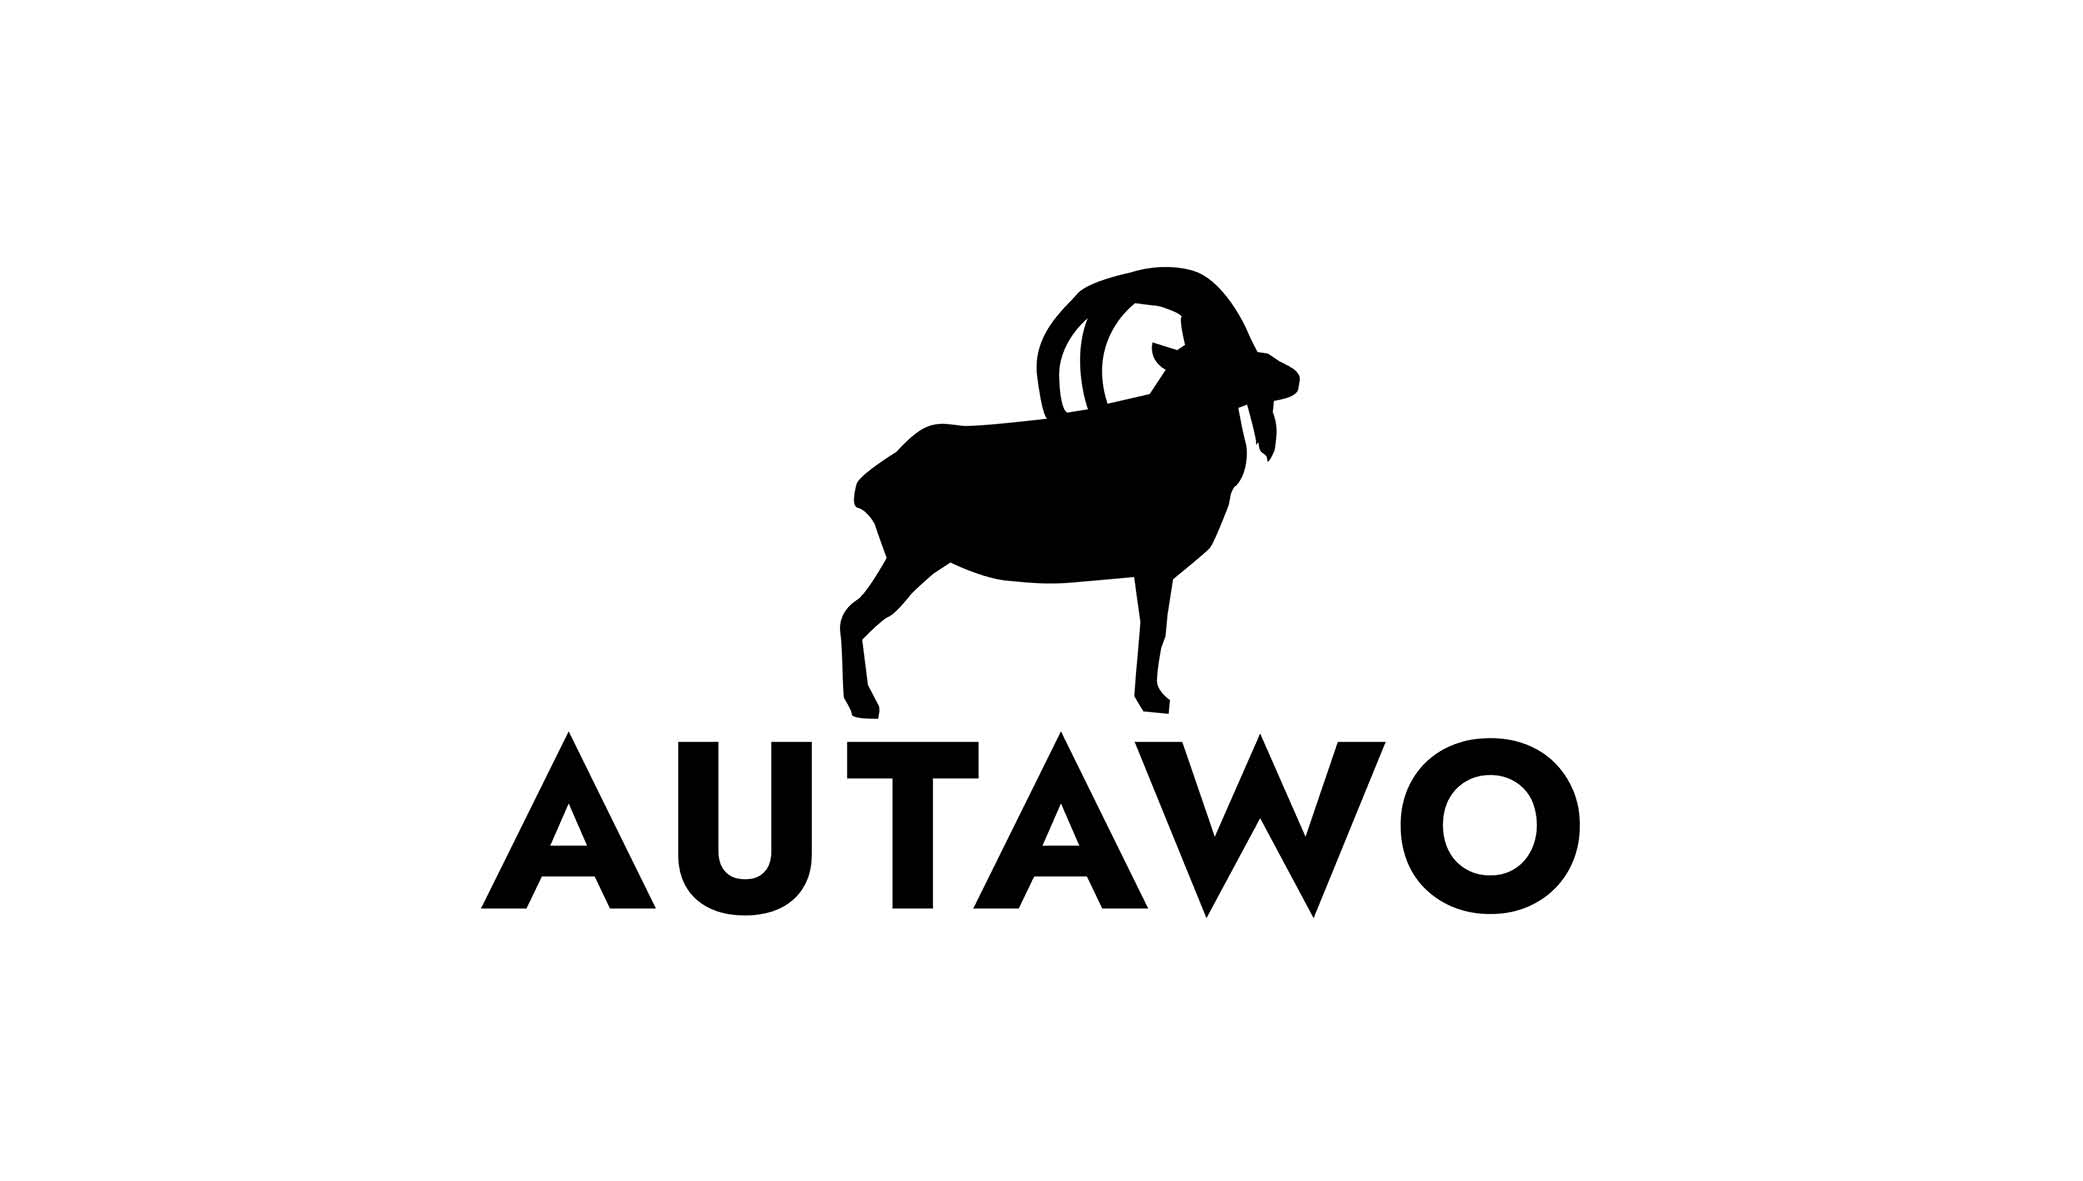 AUTAWO